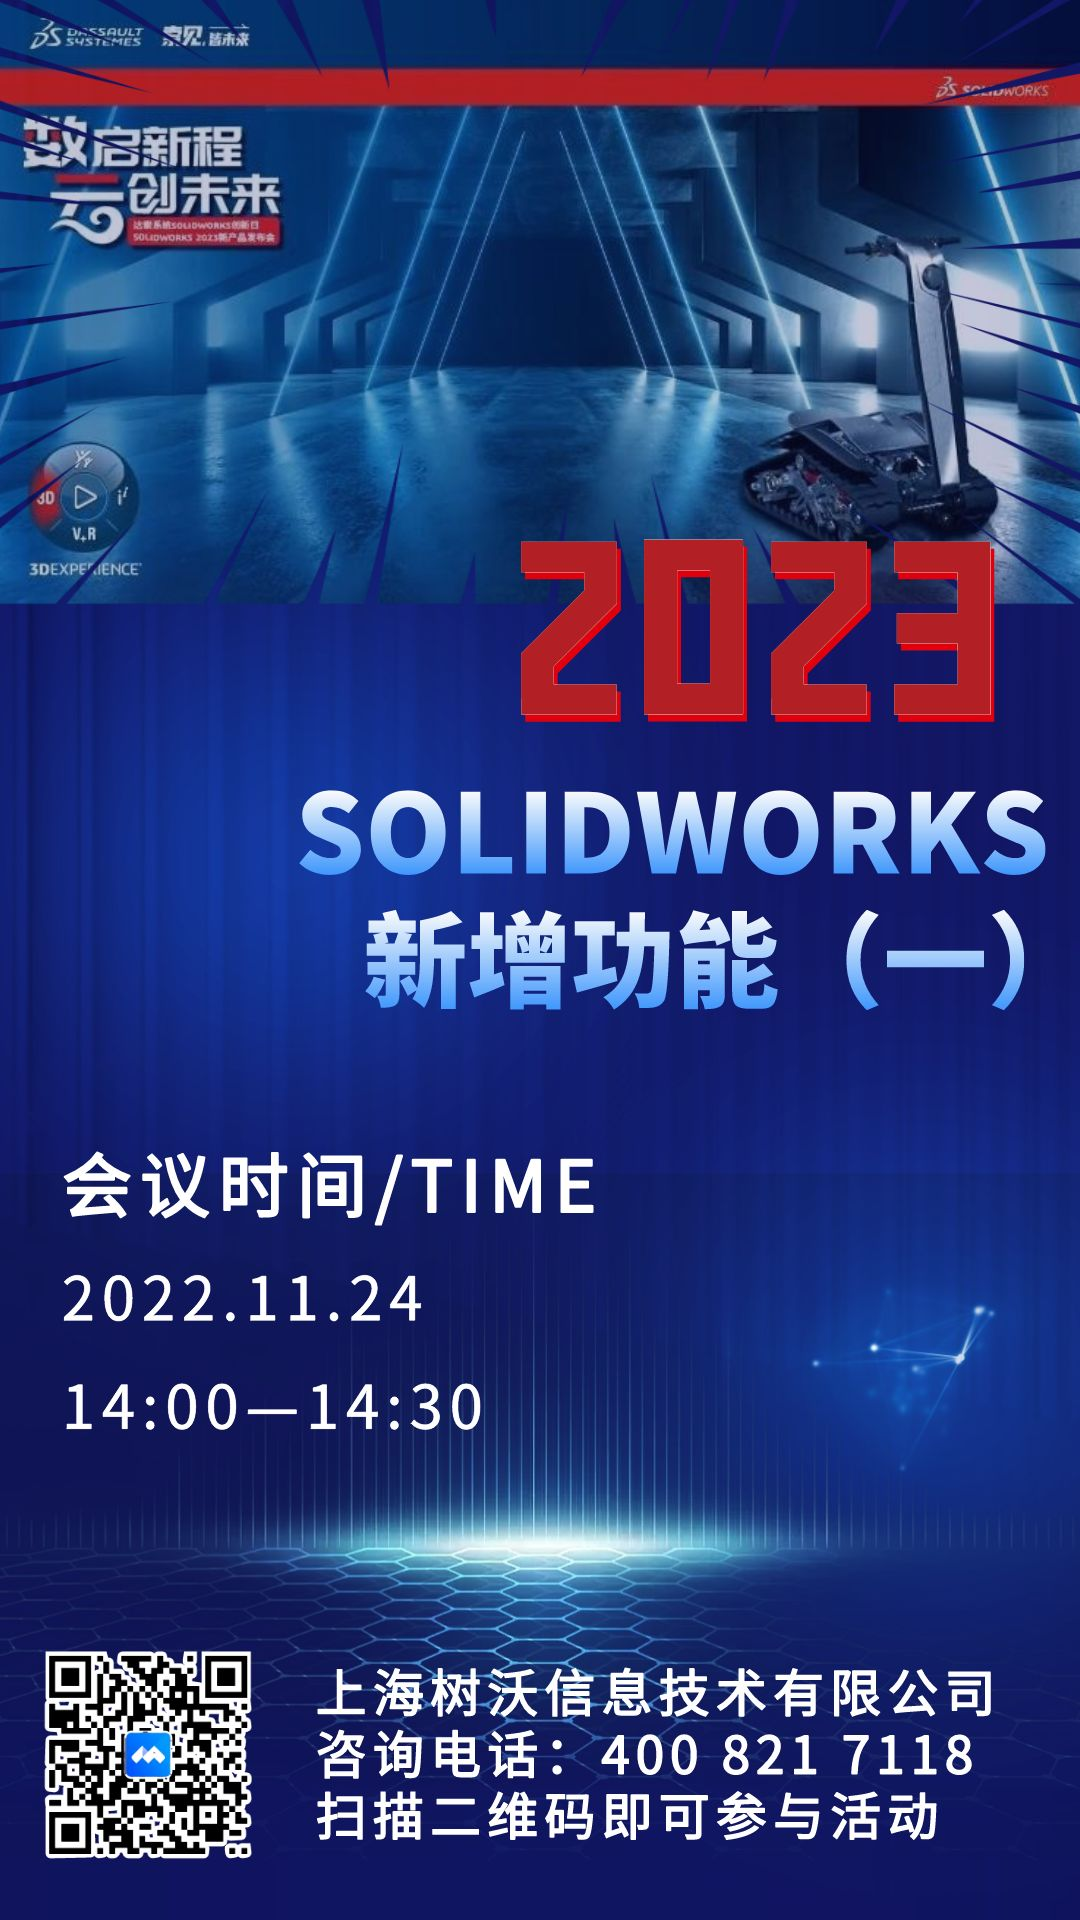 上海树沃邀请您参加2023SolidWorks新增功能在线课程（一）